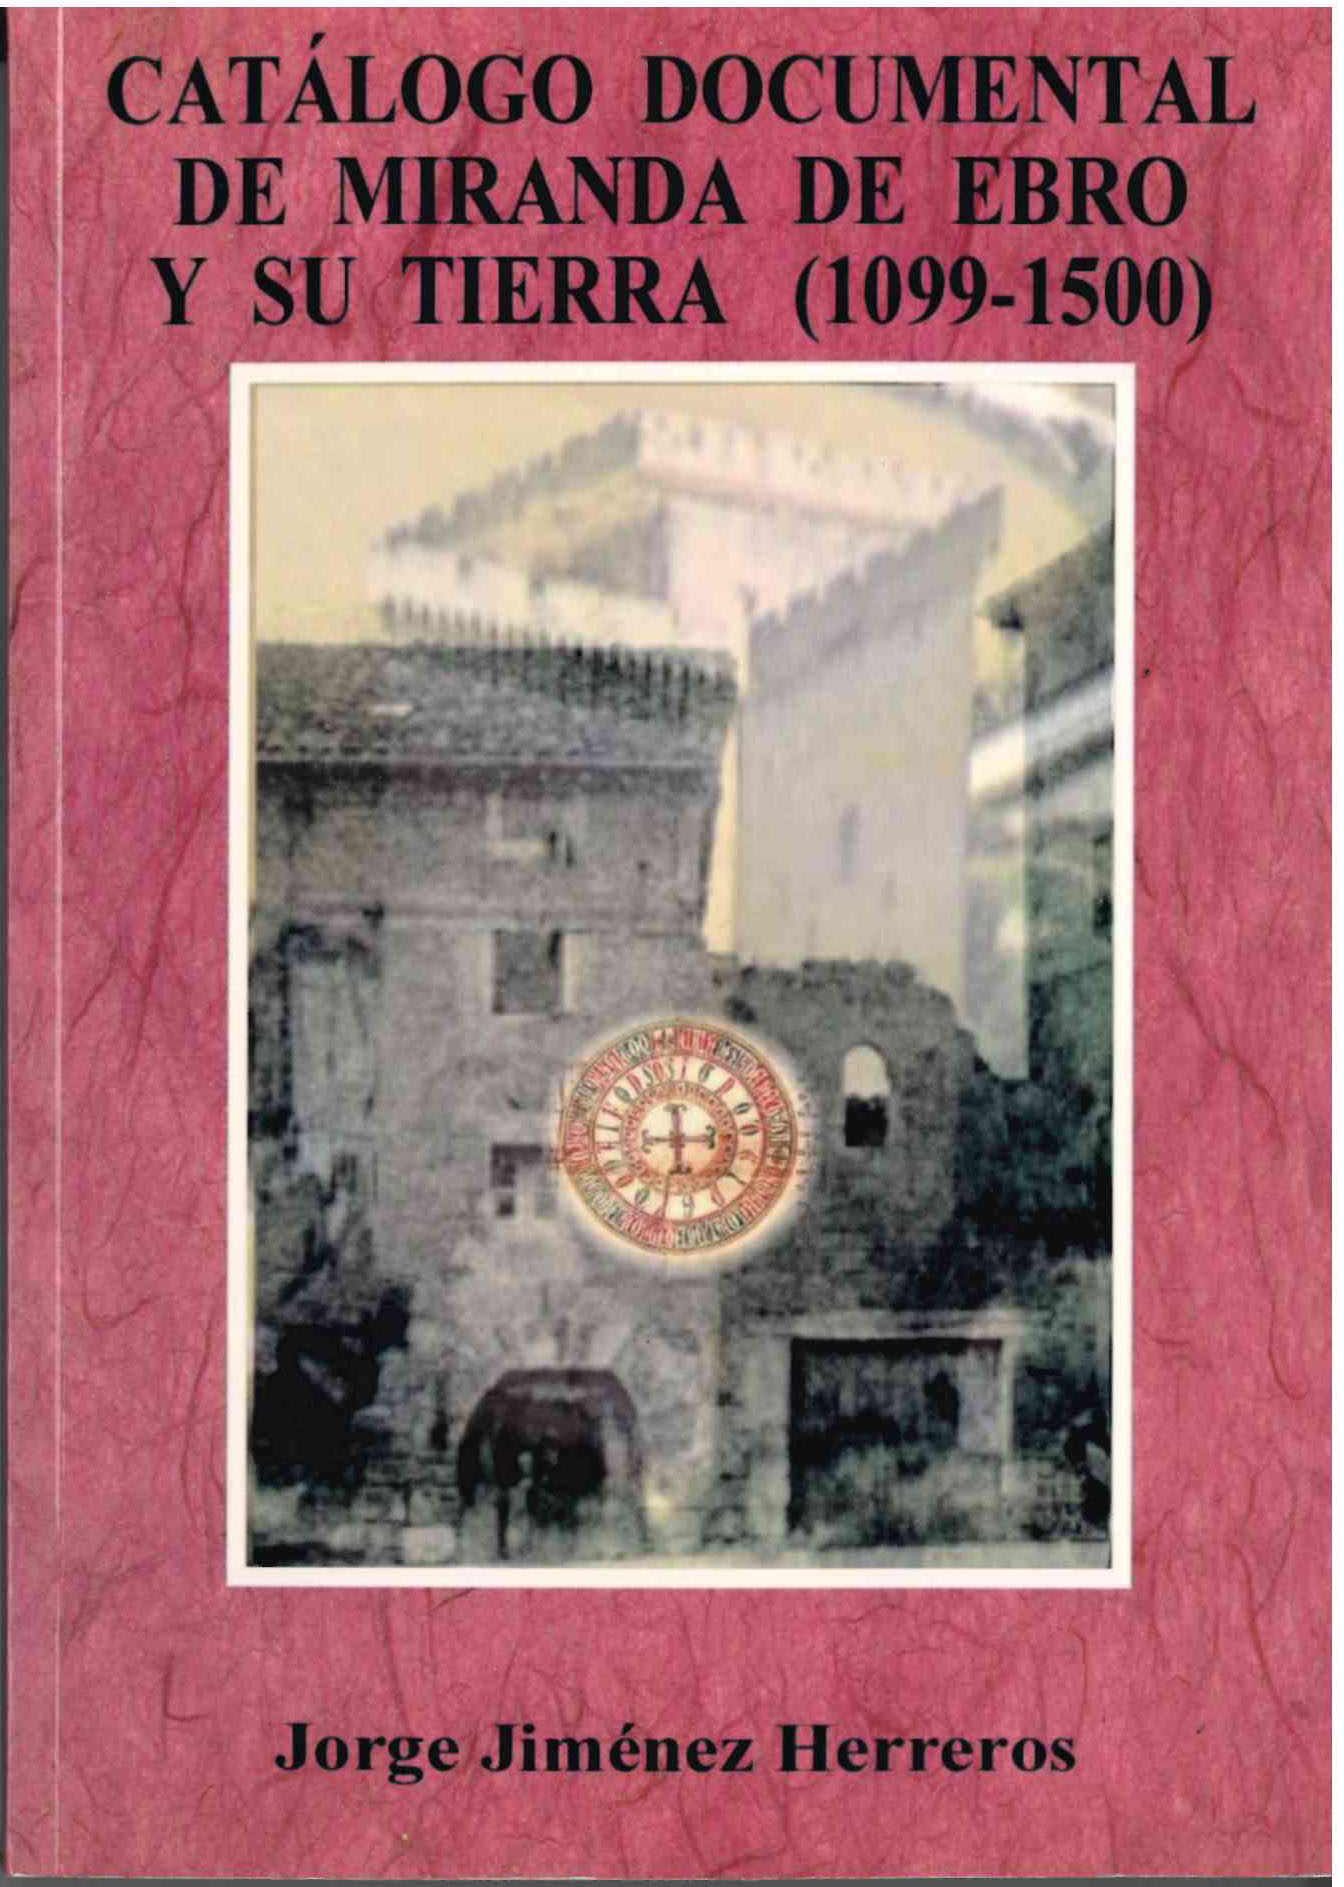 Catálogo Documental de Miranda de Ebro y su tierra por J. Jiménez Herrero. SIN USAR